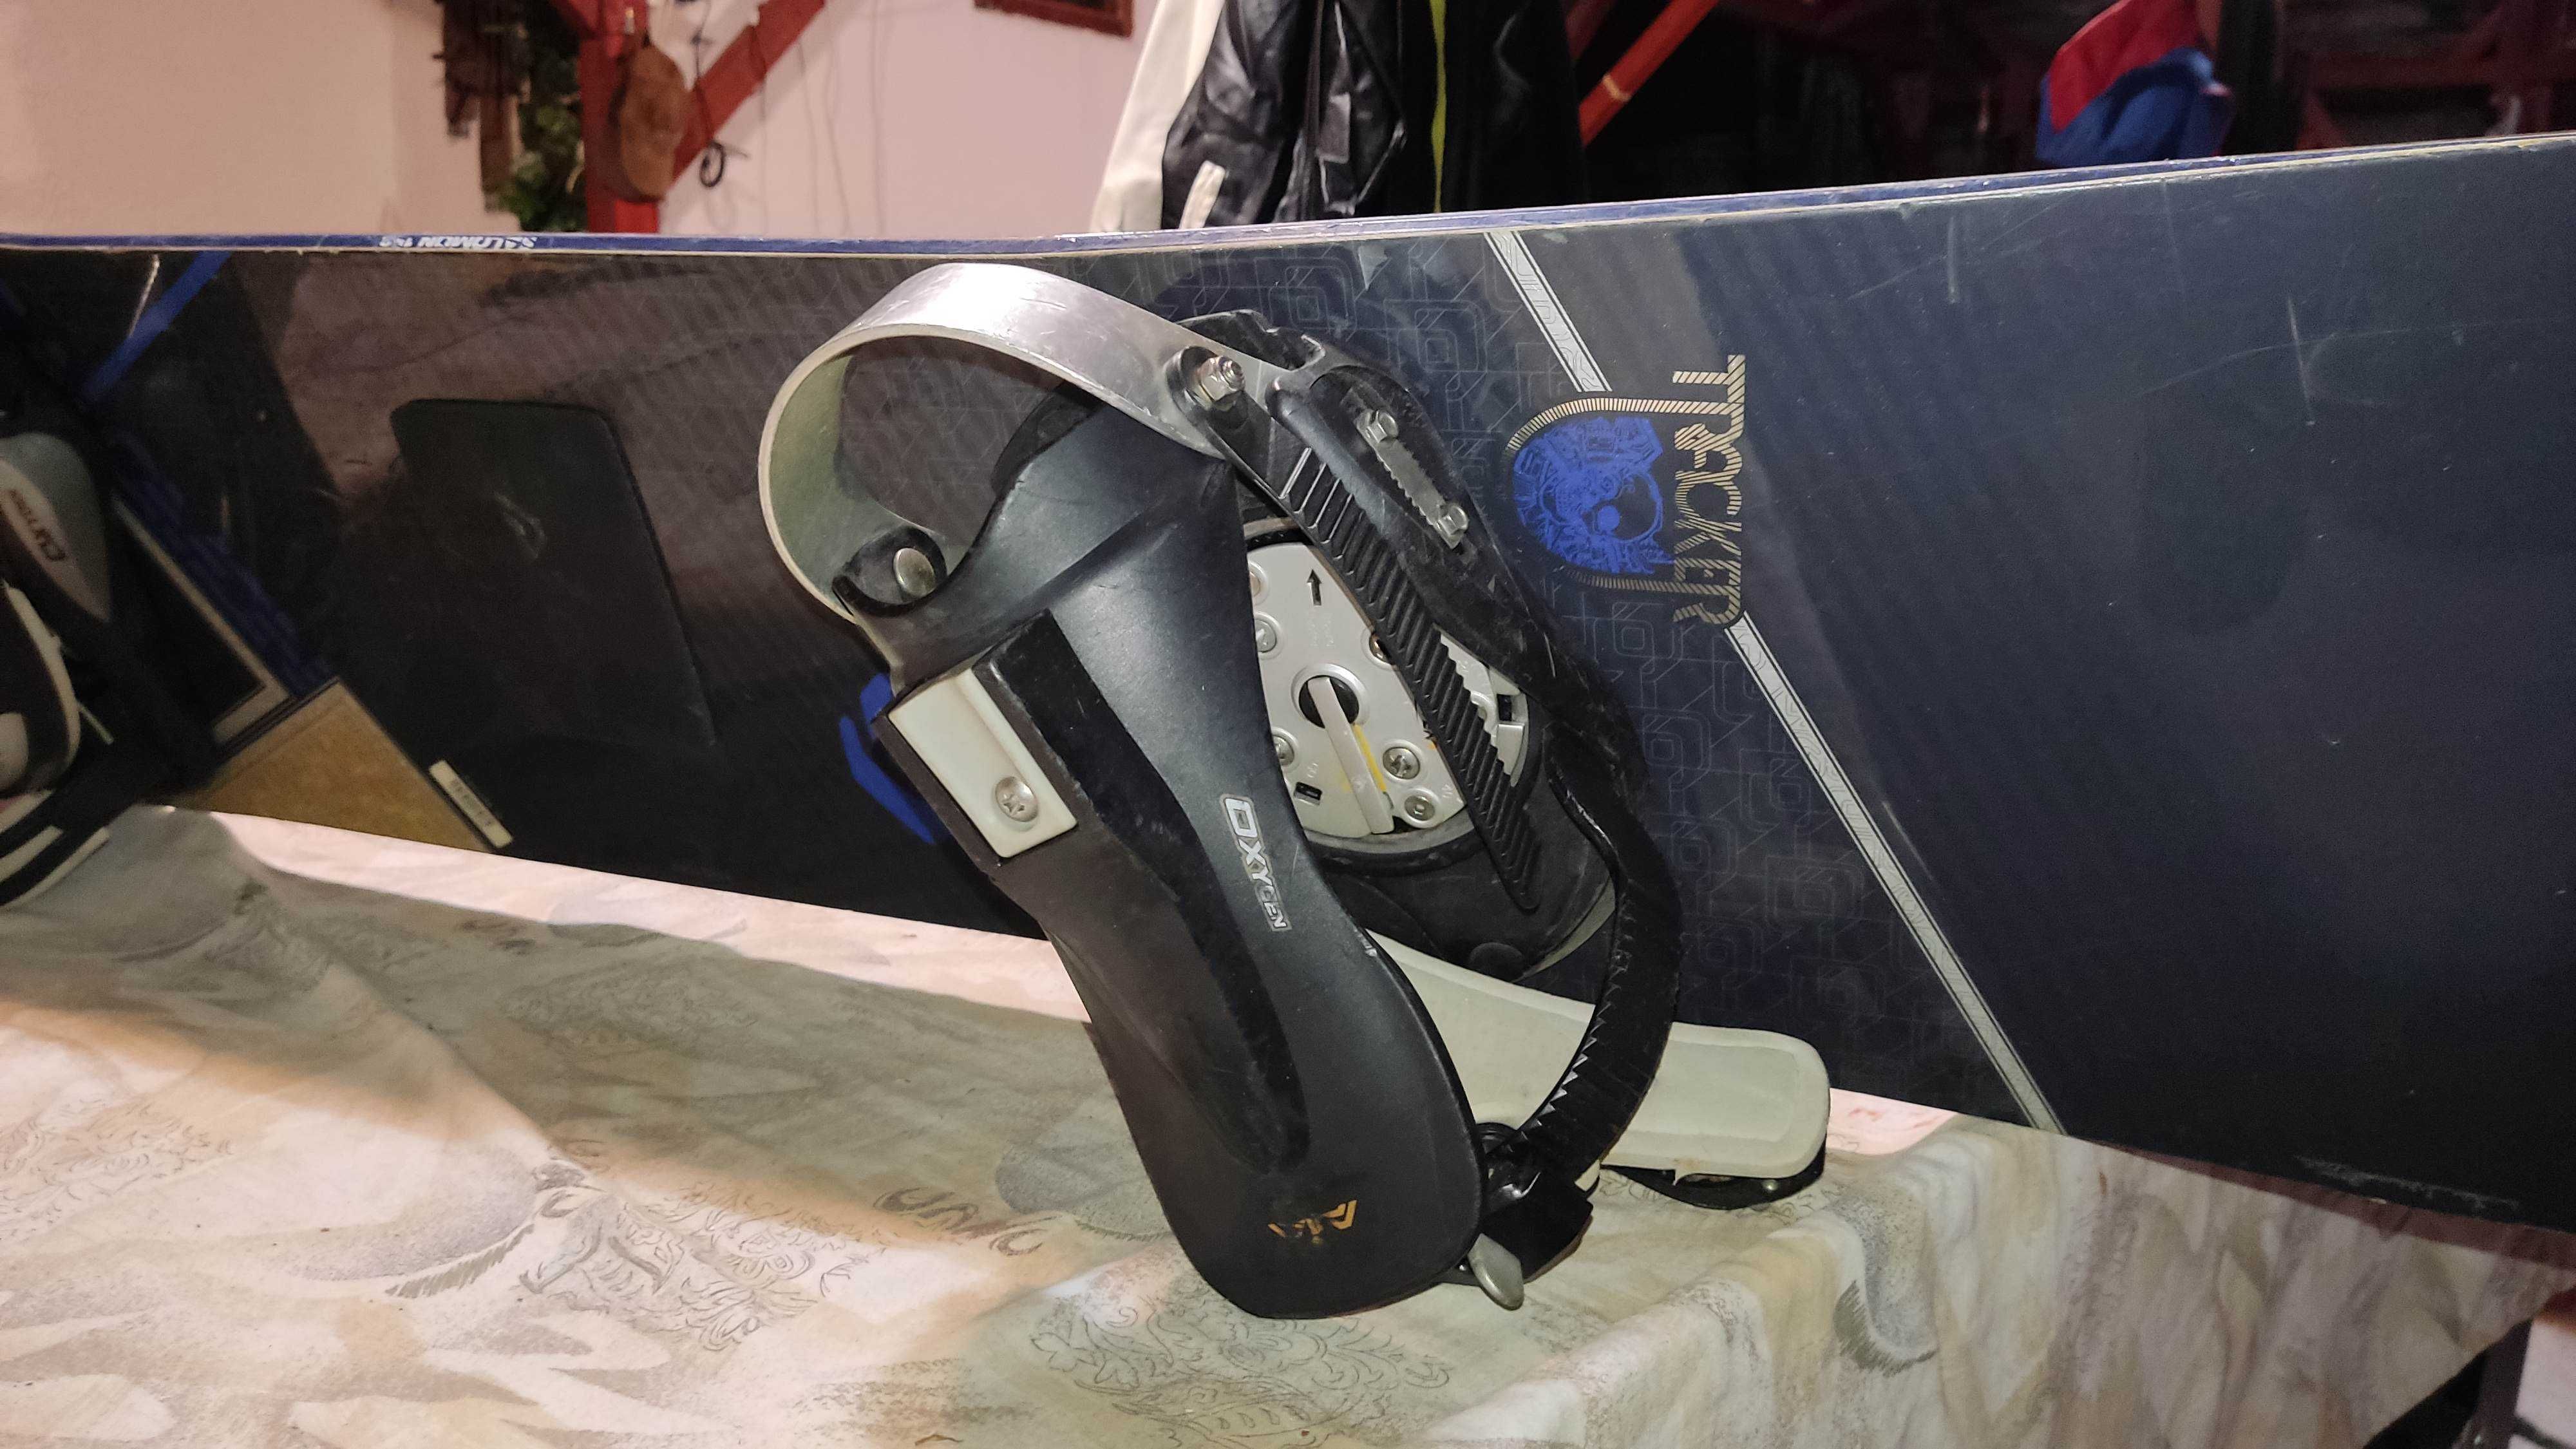 Placa snowboard Salomon - Tracker, cu legaturi Oxygen - 158cm